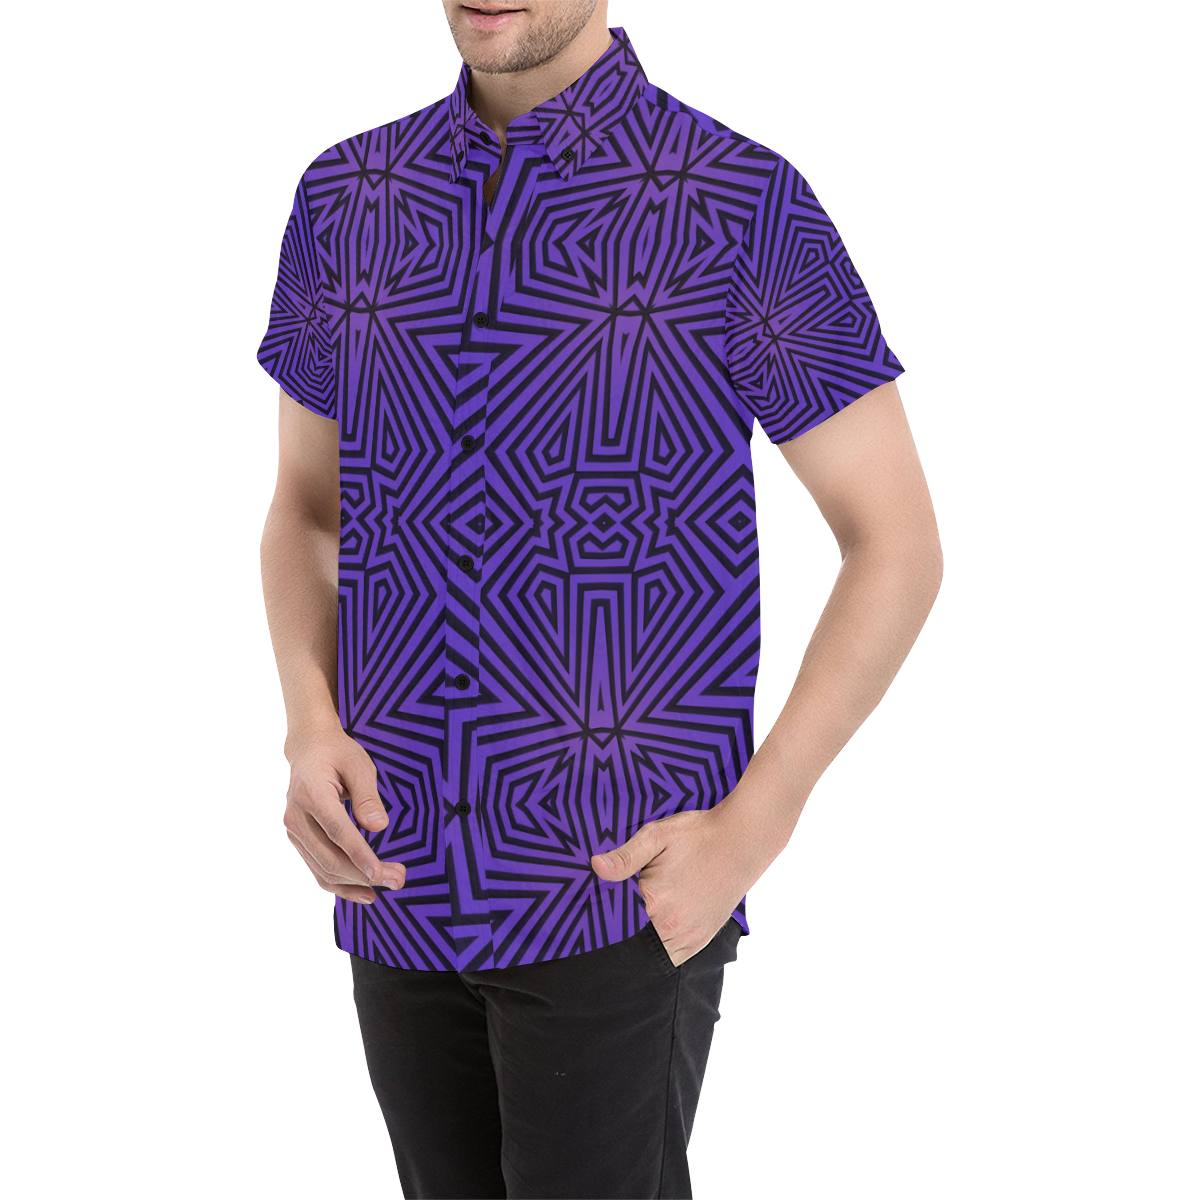 Purple-Black Tribal Pattern Men's All Over Print Short Sleeve Shirt (Model T53)